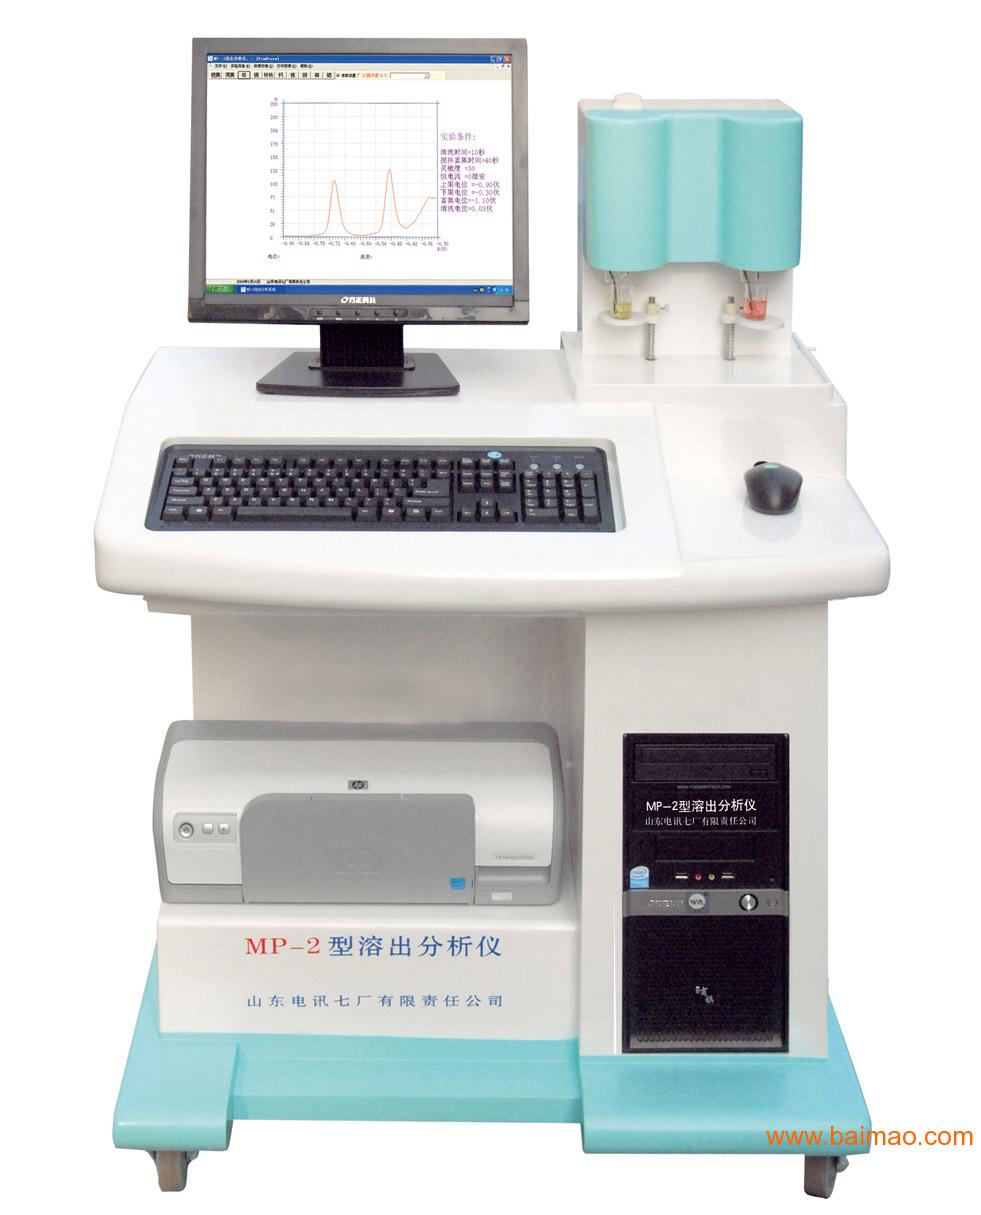 MP-2c型溶出分析仪微量元素分析仪